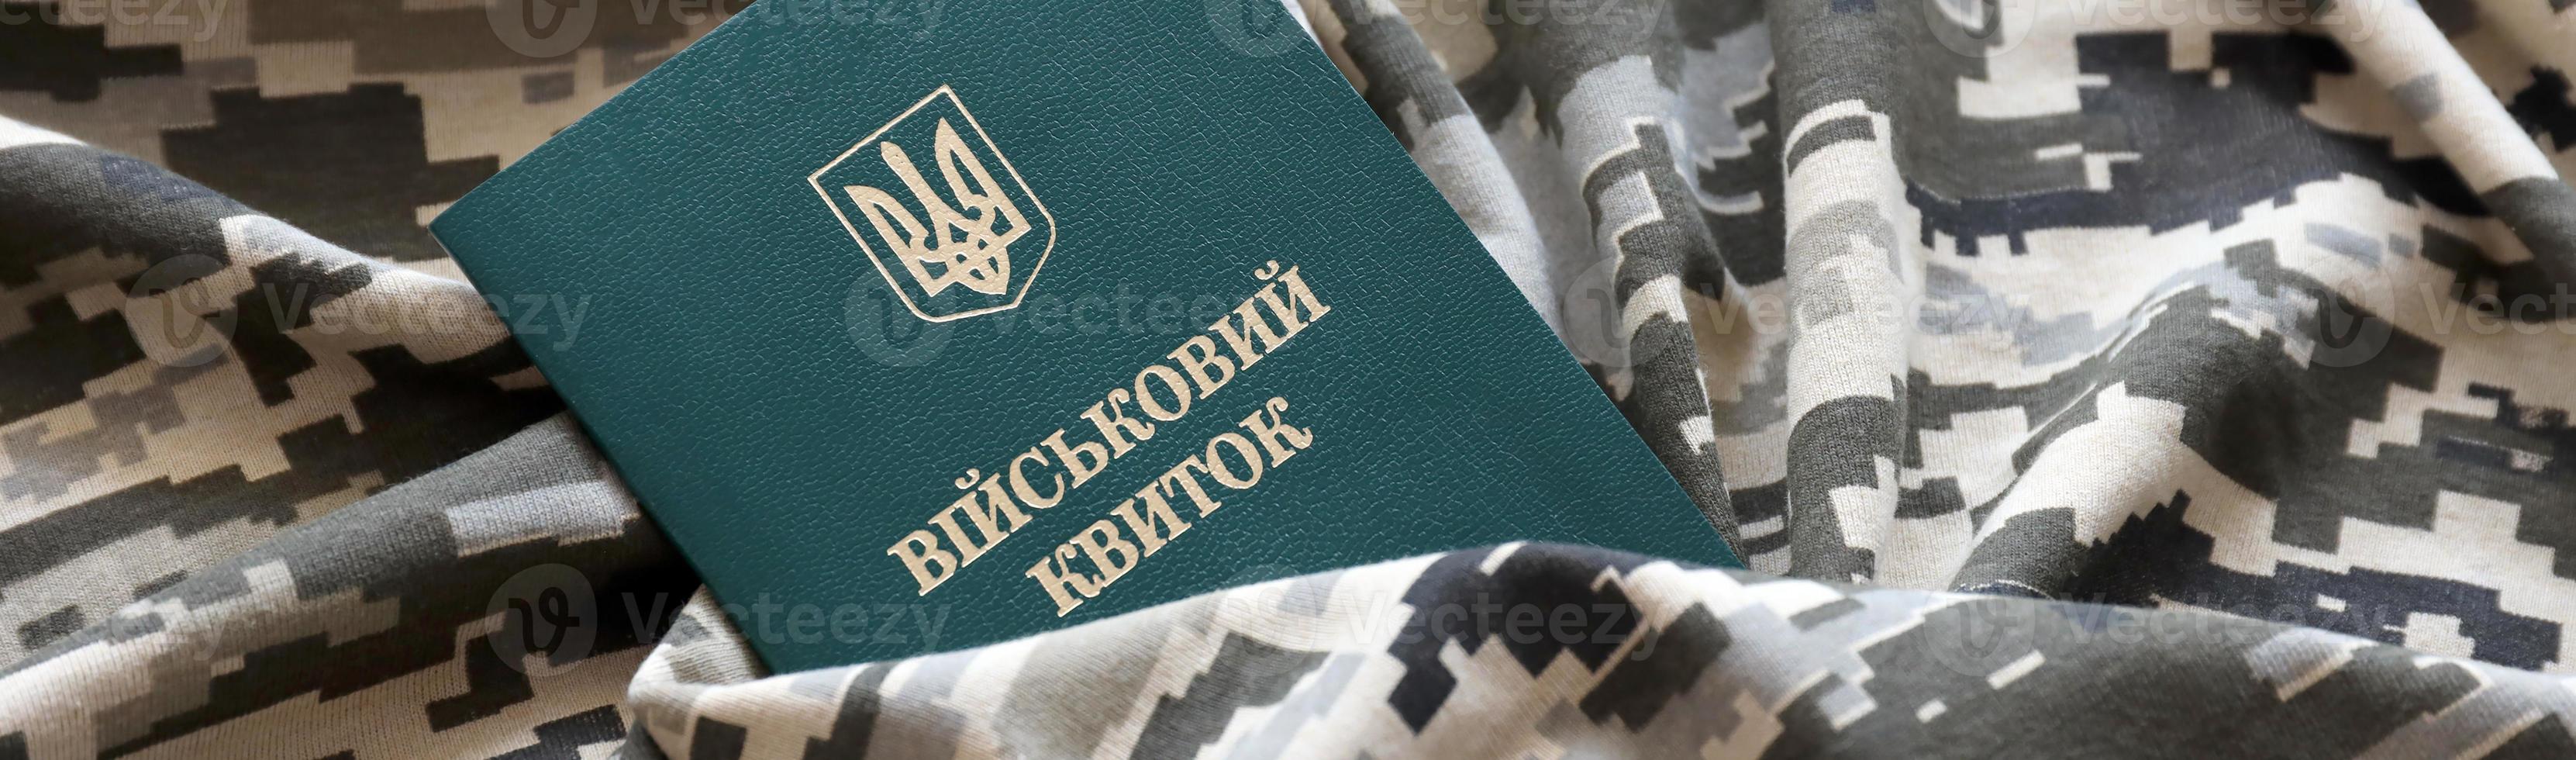 carte d'identité militaire ukrainienne sur tissu avec texture de camouflage pixélisé. tissu avec motif camouflage en formes de pixels gris, marron et vert avec jeton personnel de l'armée ukrainienne photo